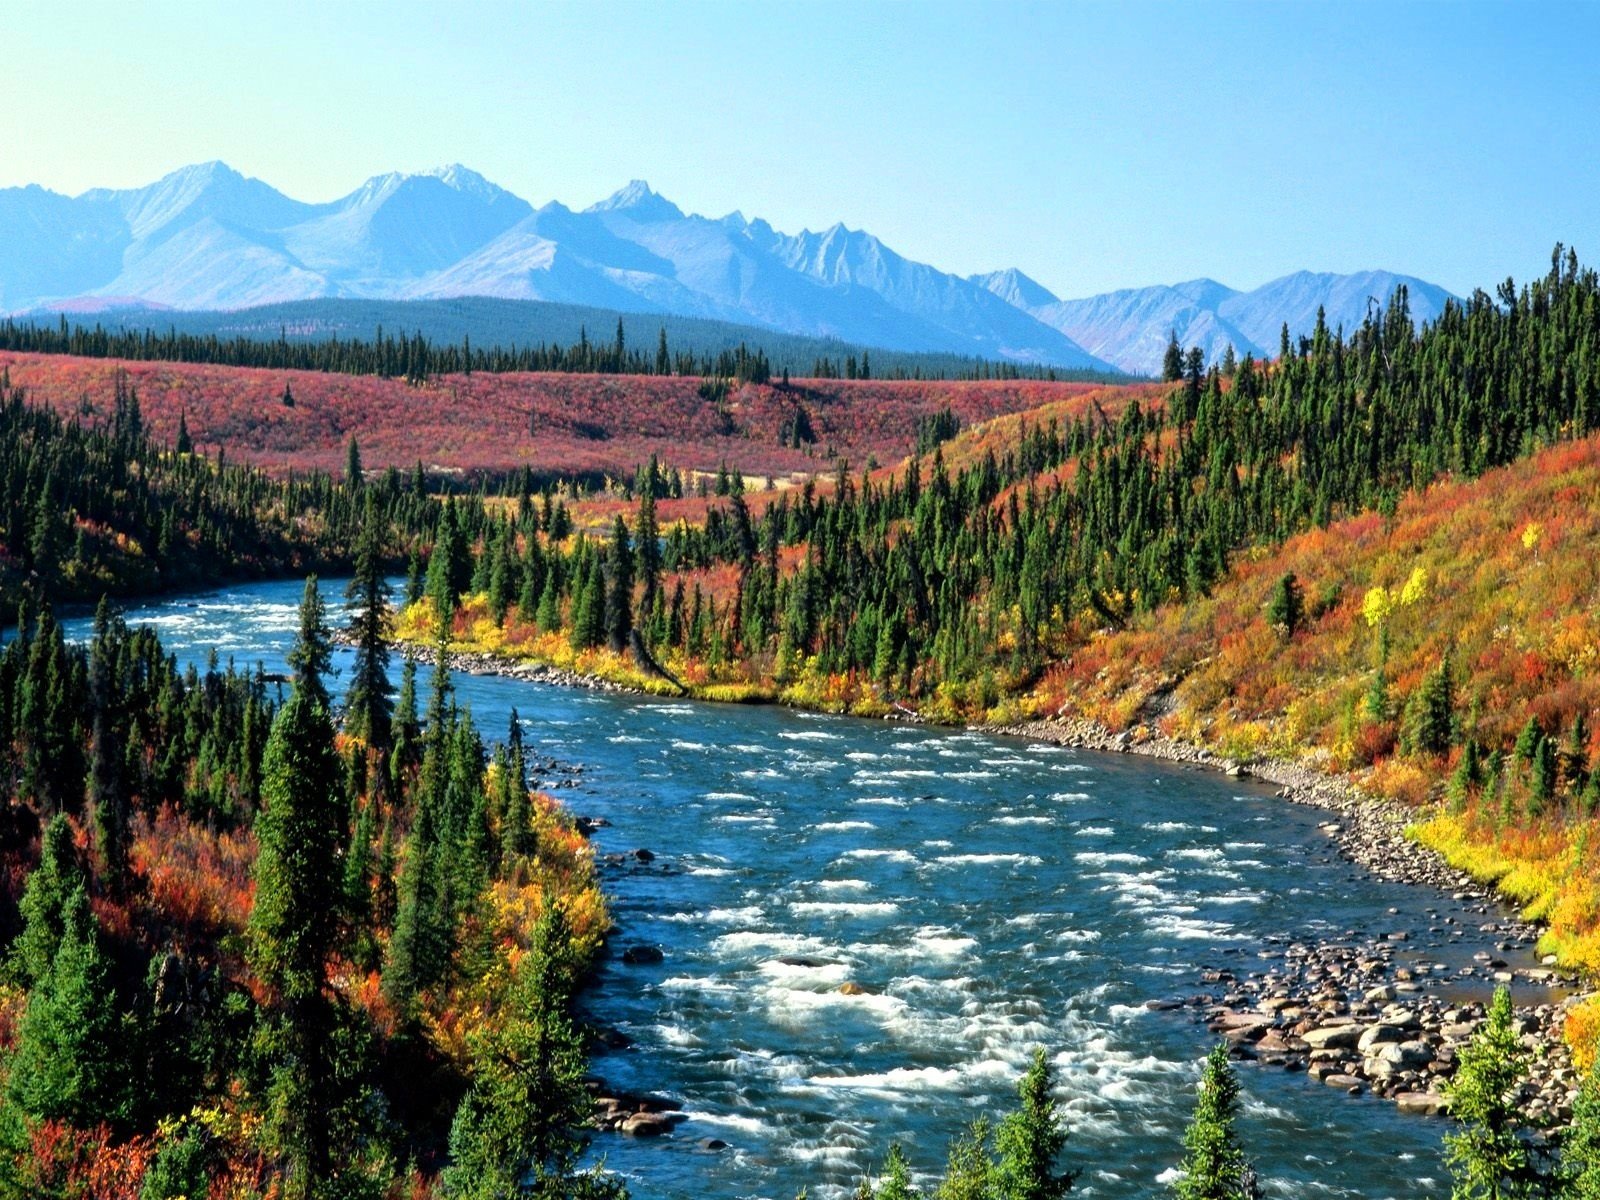 Dòng sông Yukon uốn khúc, len lỏi qua những cánh rừng rậm rạp. Những khu rừng yên bình cùng với tiếng nước chảy đều tạo nên một bức tranh thiên nhiên tuyệt vời của Yukon. Click ngay để tải hình nền dòng sông Yukon đầy hoang sơ.